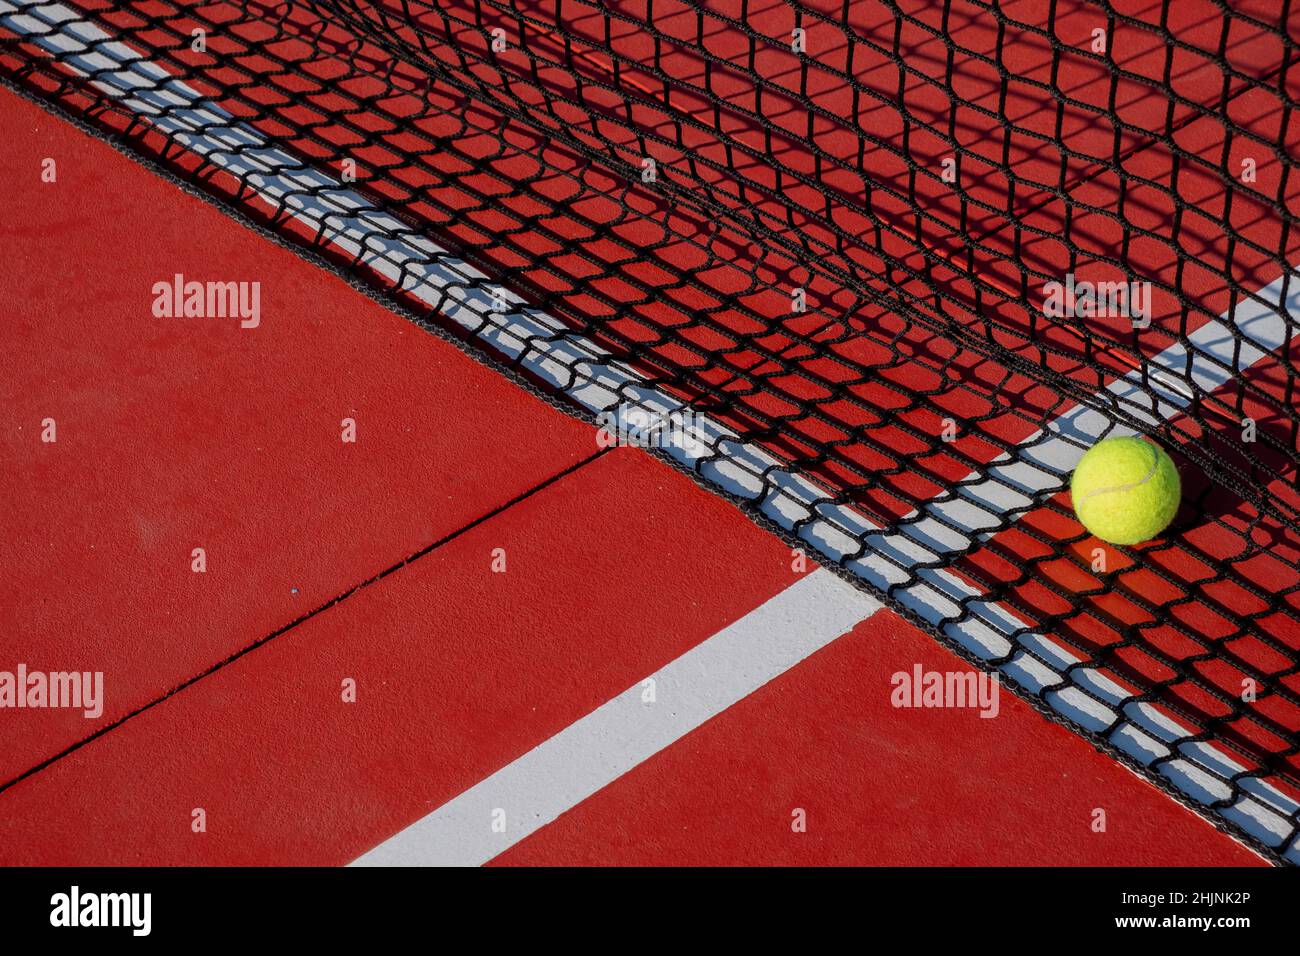 Tennisball neben dem Netz eines roten Hartflächen-Tennisplatzes. Schlägersportkonzept. Stockfoto